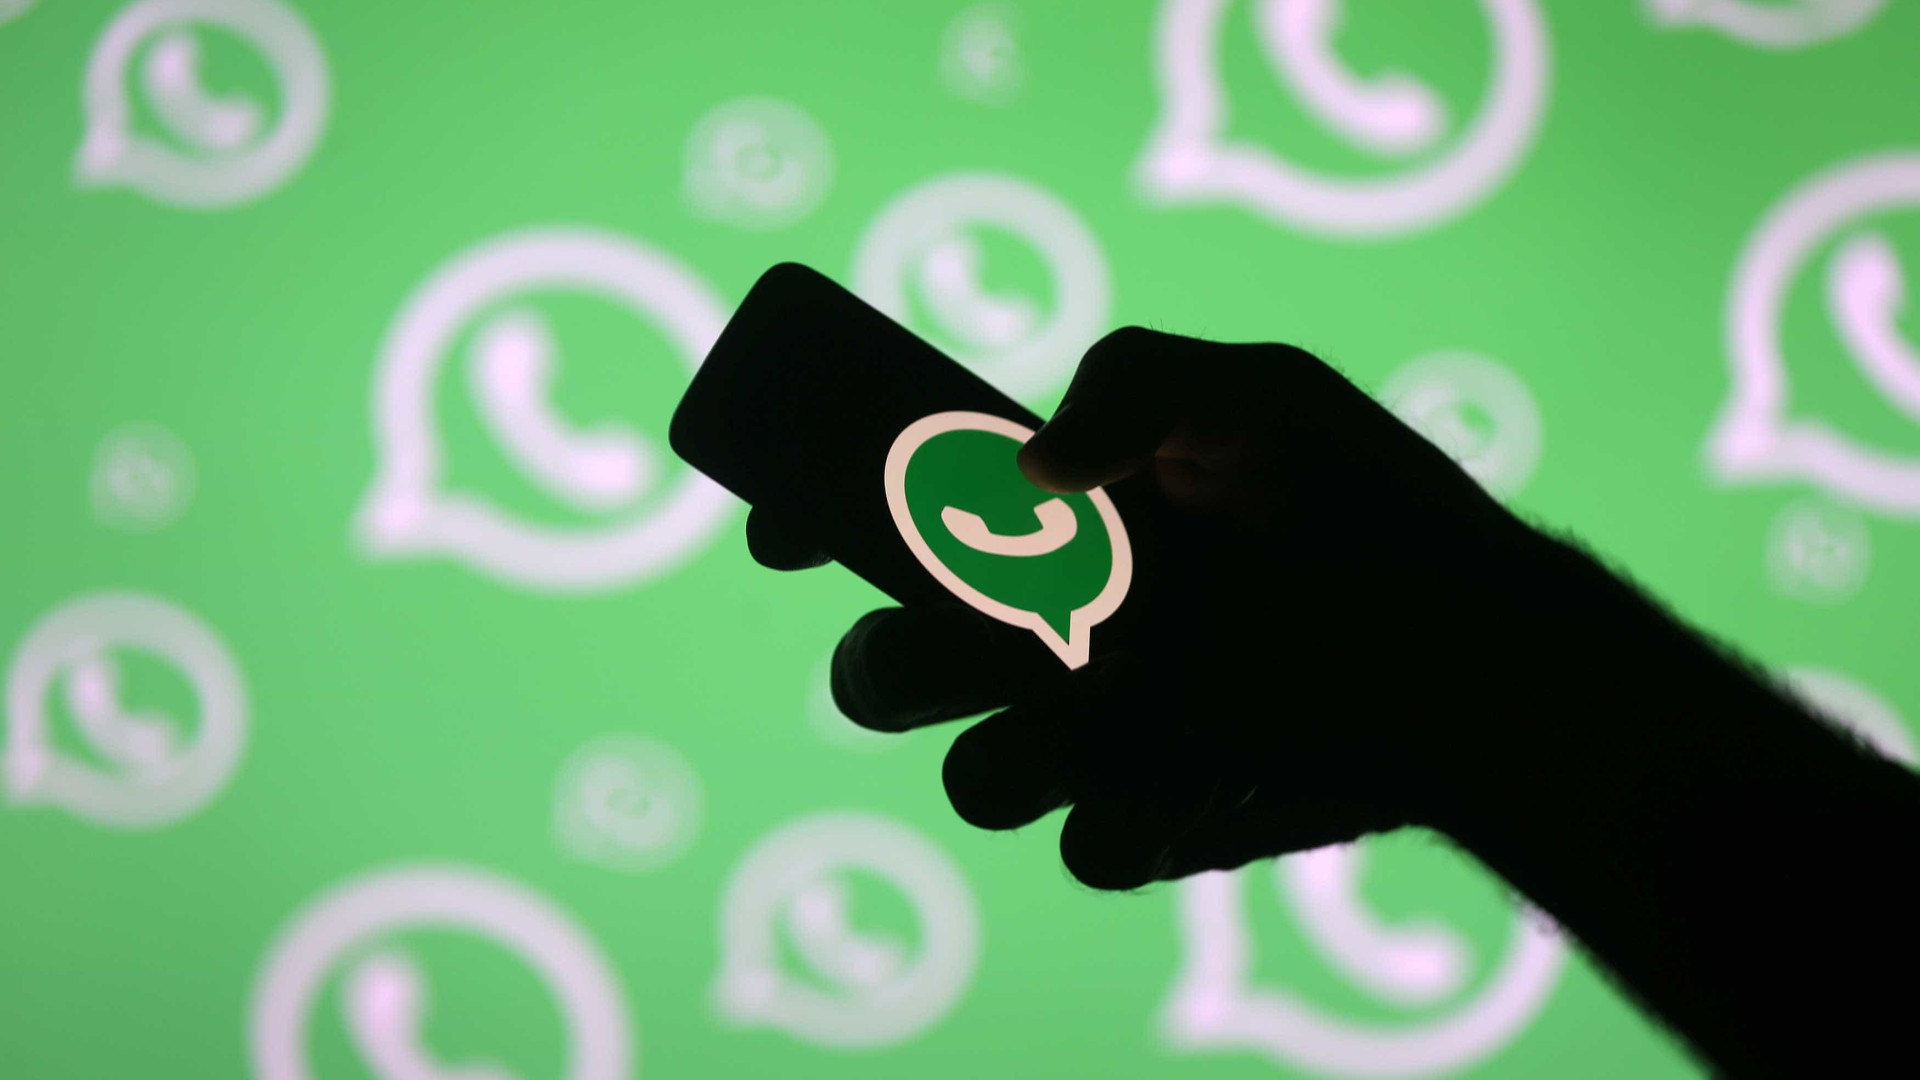 Libere espaço no celular com truque simples no WhatsApp